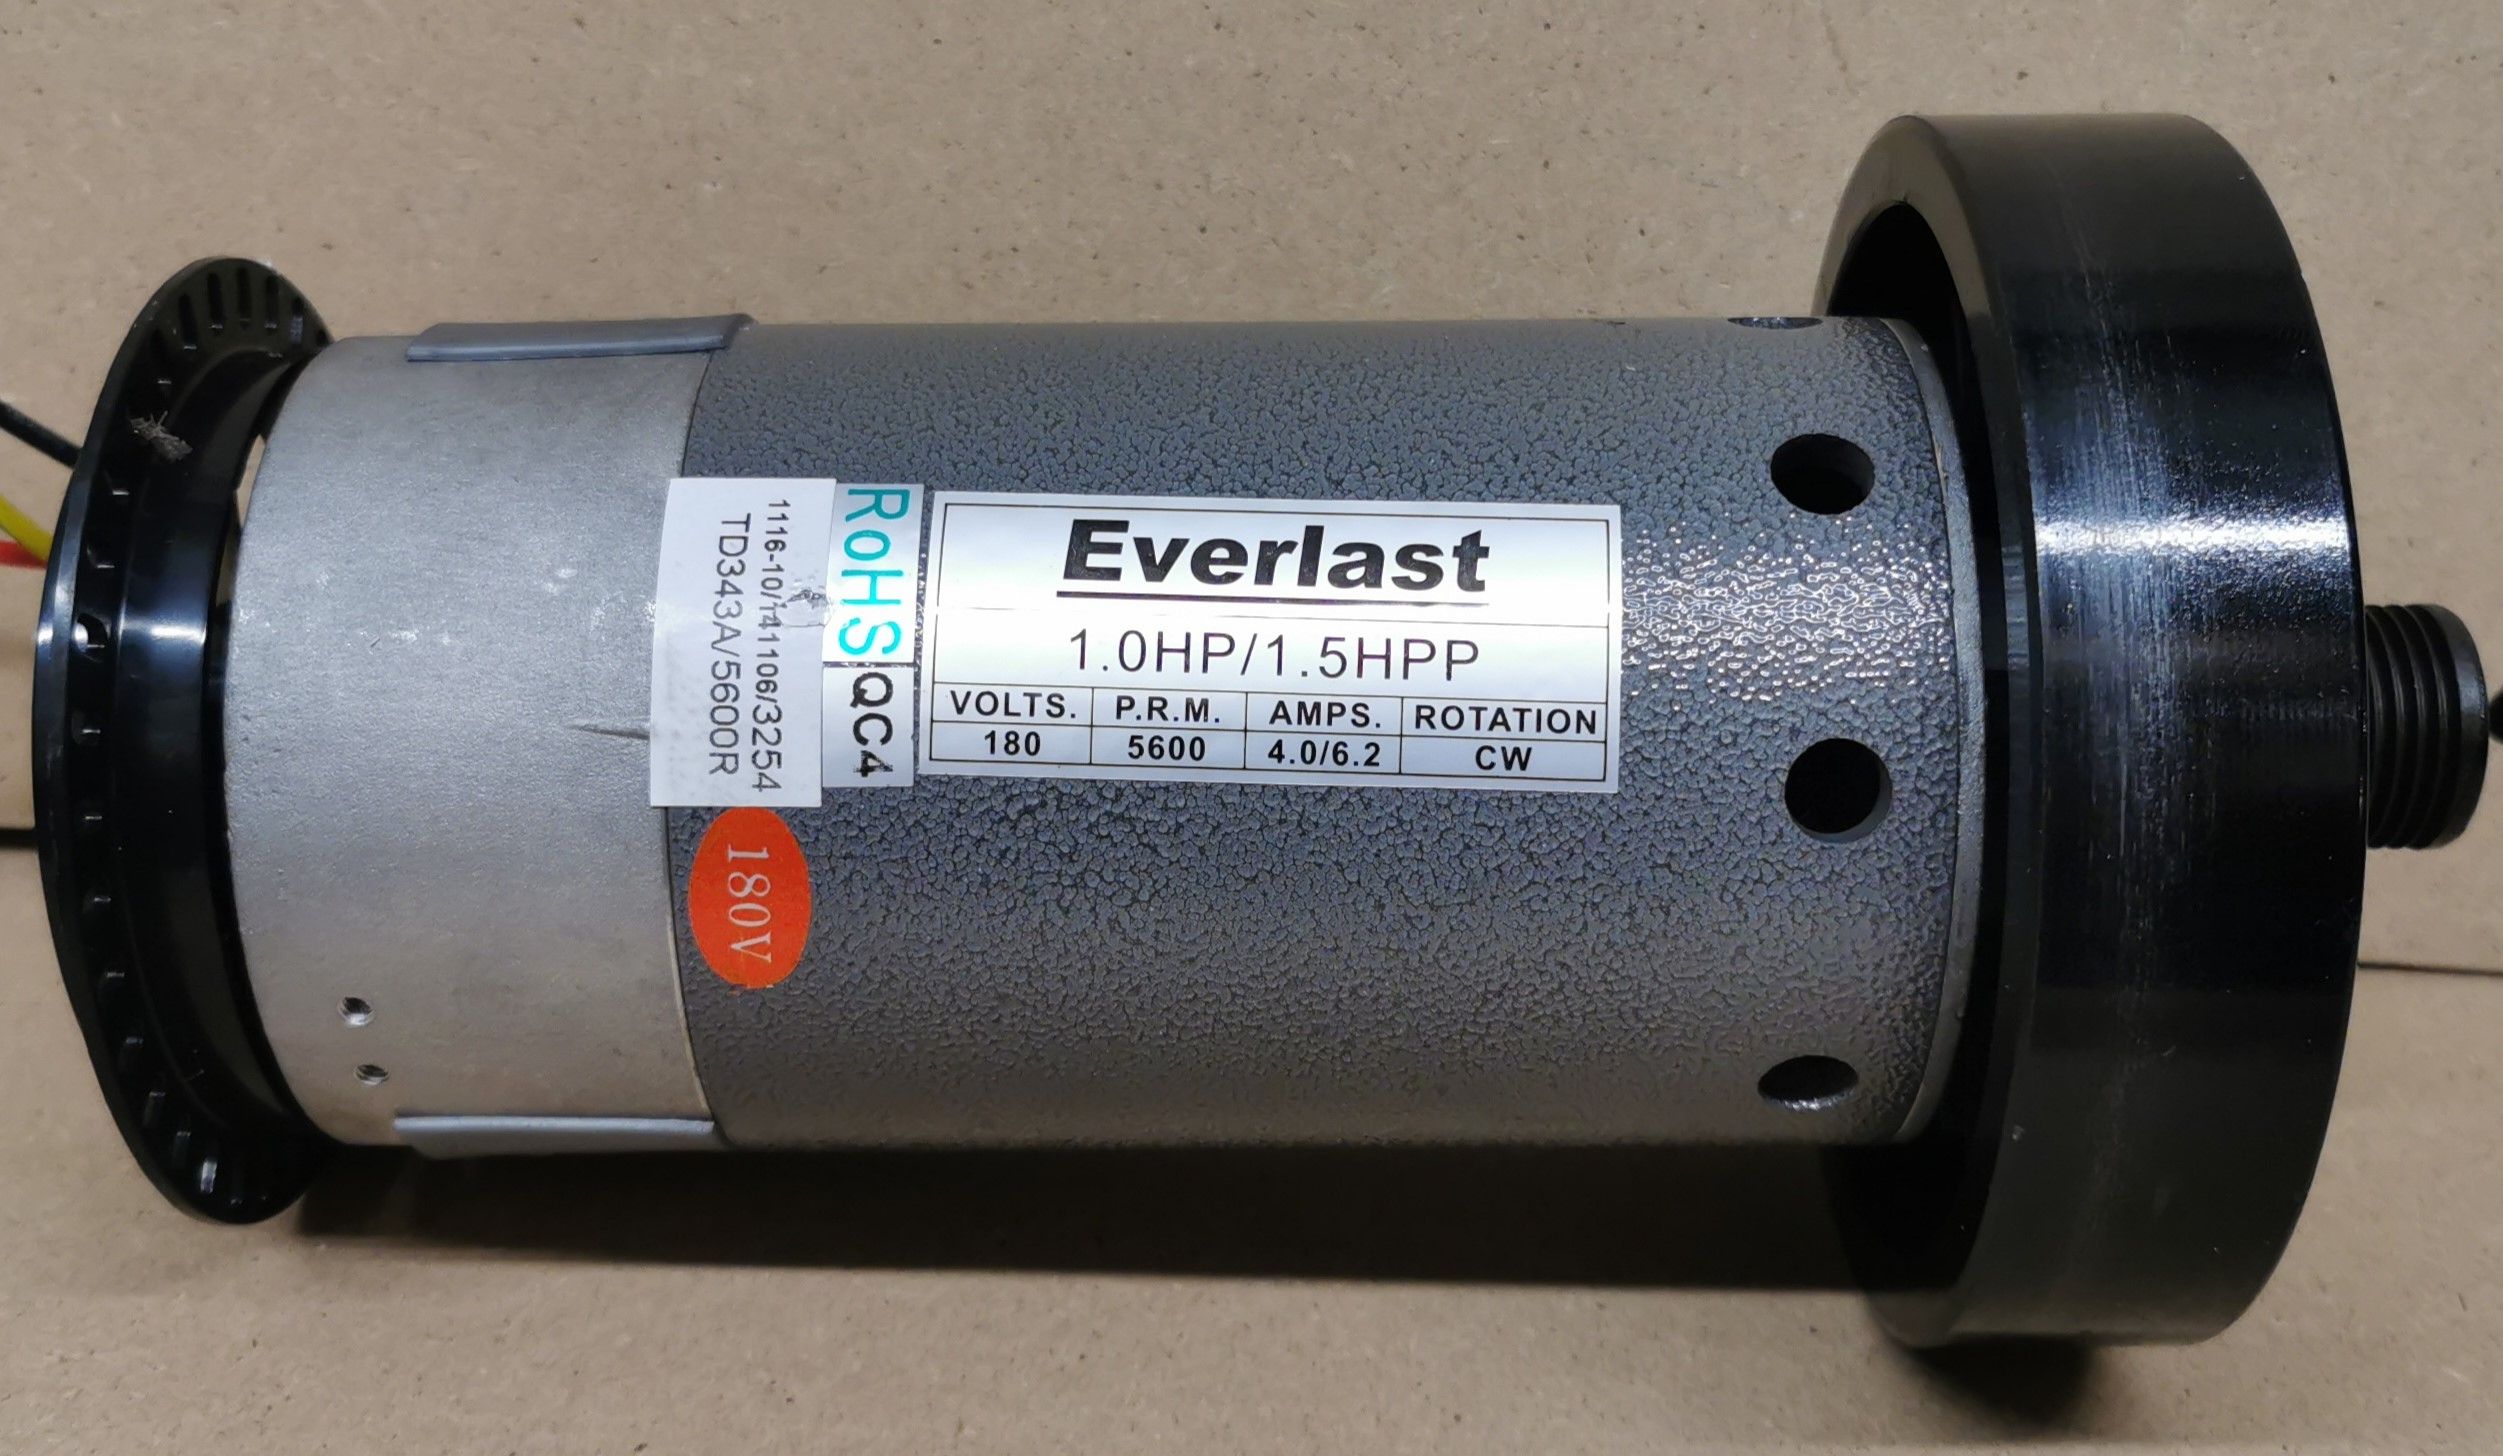 296/8449 Everlast XV7 Treadmill Drive Motor